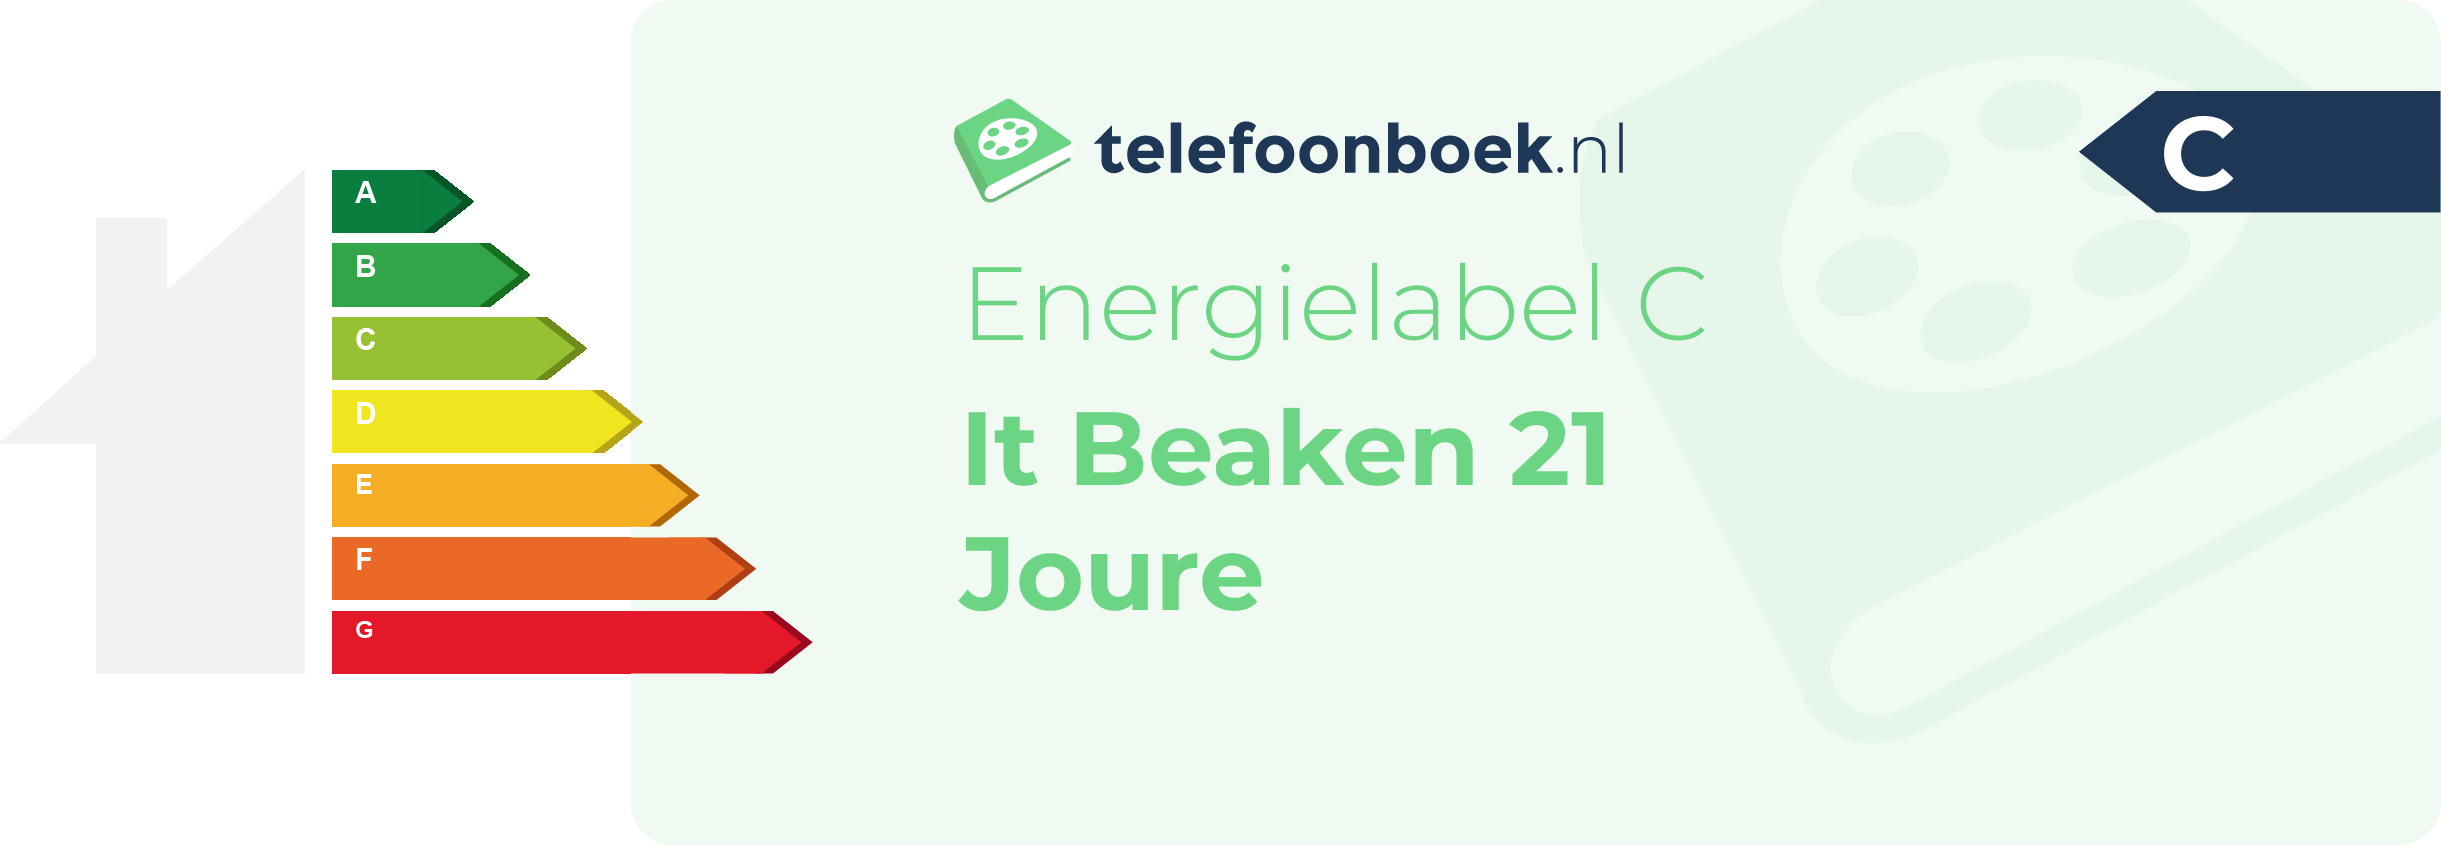 Energielabel It Beaken 21 Joure